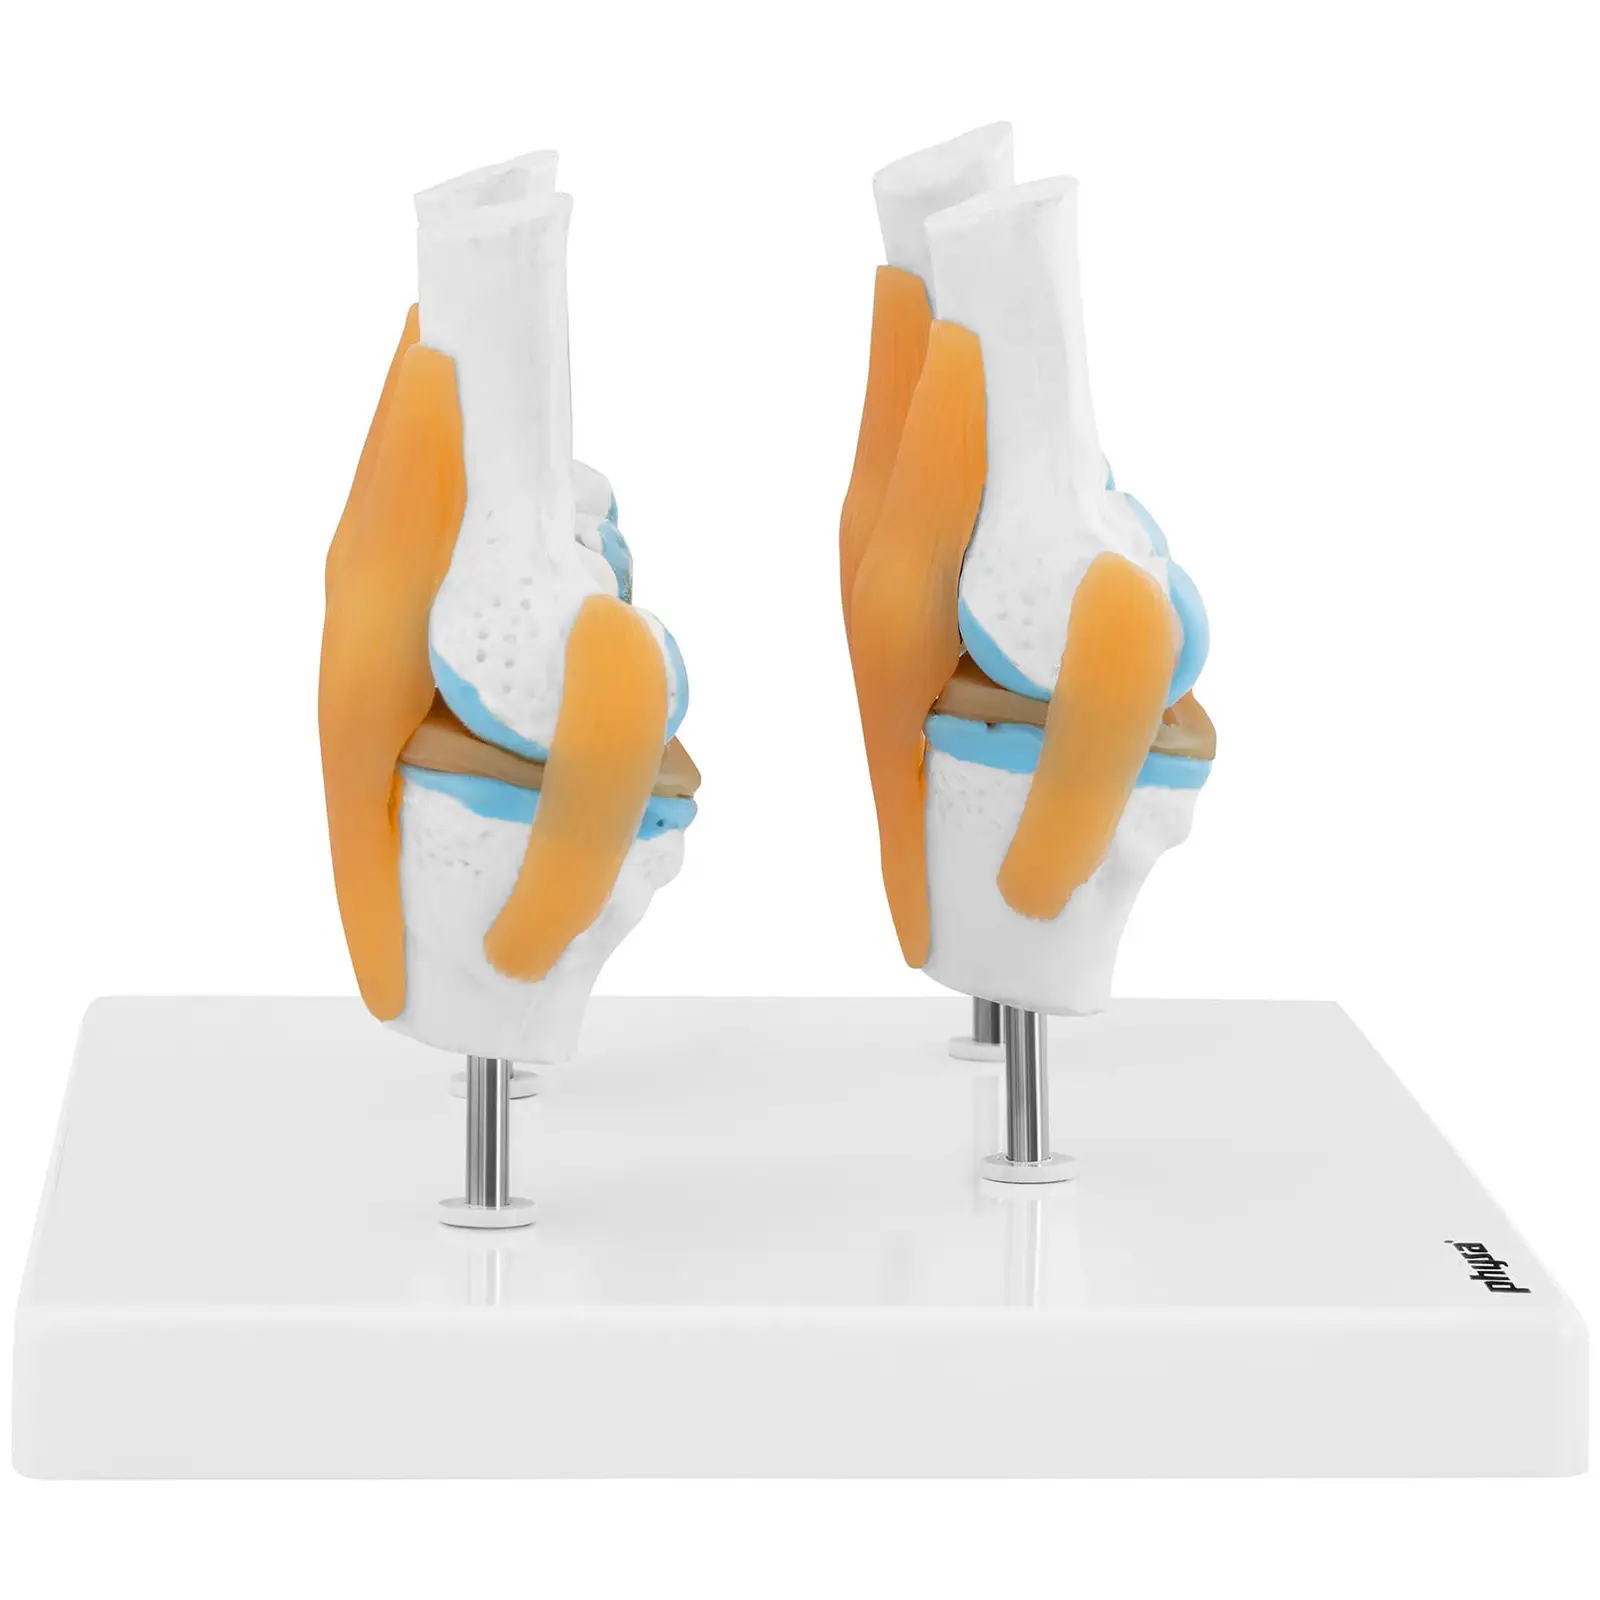 Modelo anatómico de rodilla - 4 estadios de artrosis - mitad del tamaño natural